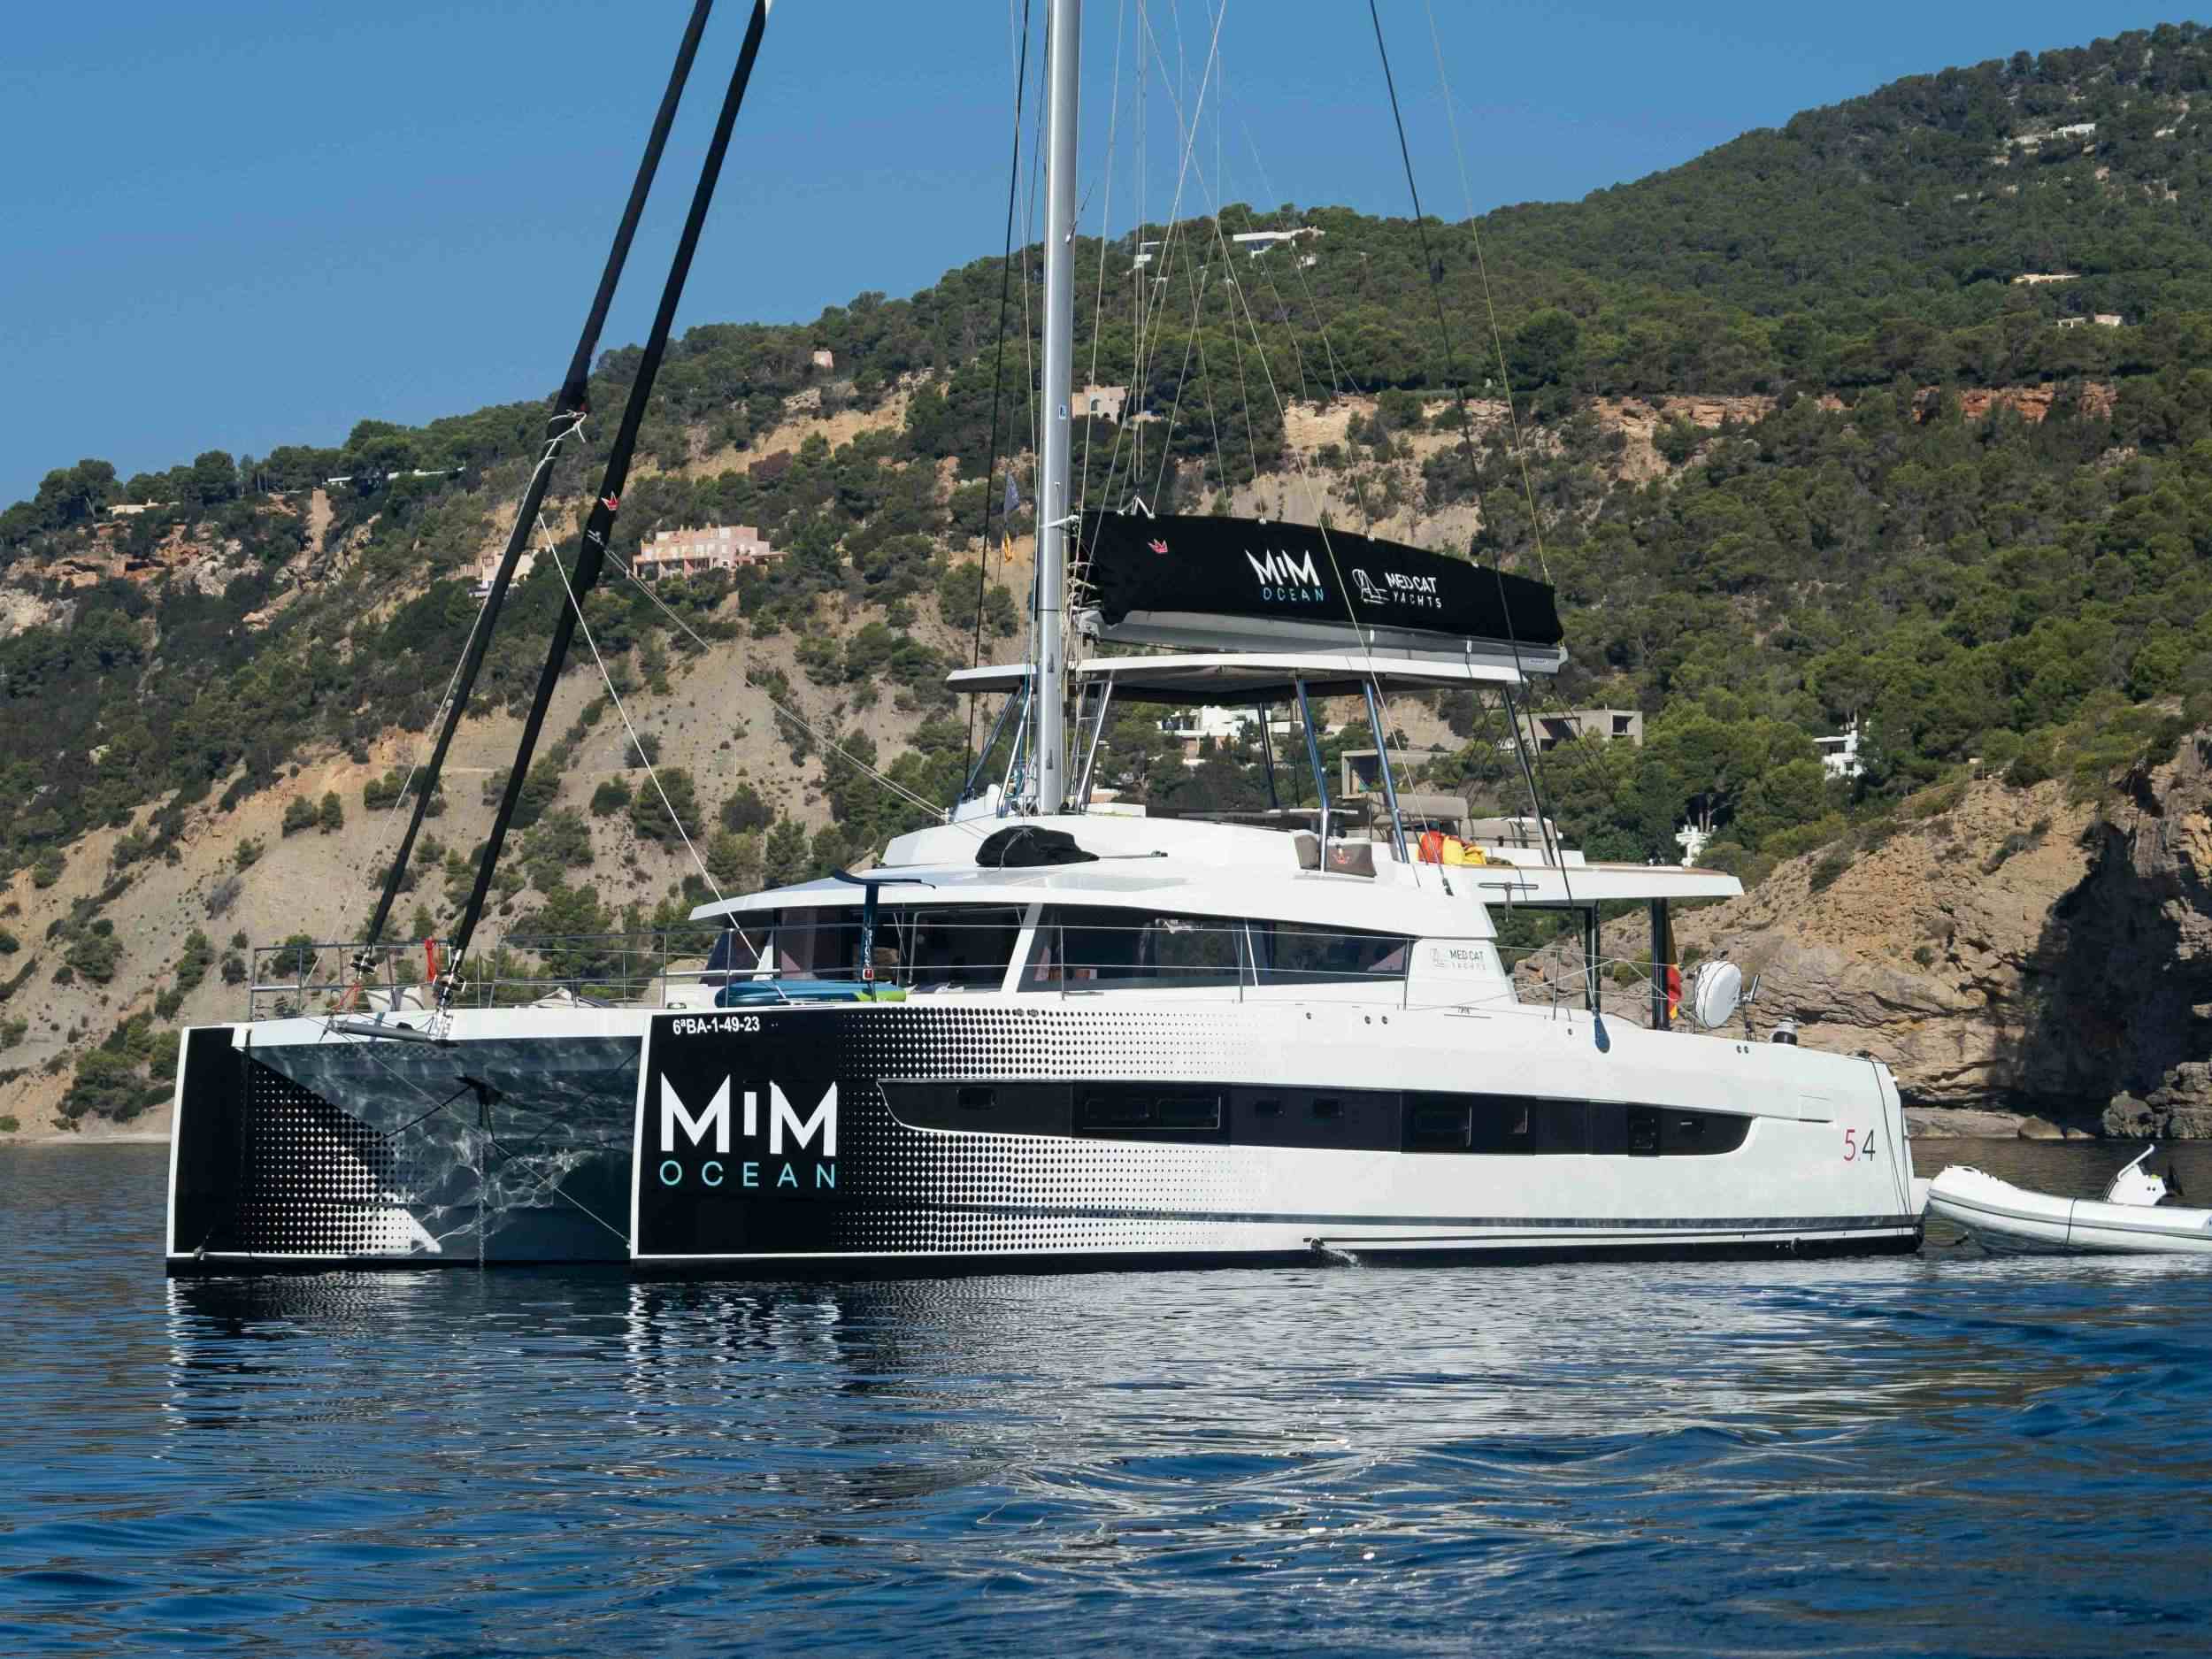 MIM OCEAN THREE - Yacht Charter Las Palmas de Gran Canaria & Boat hire in Spain, Balearics, Bahamas 1